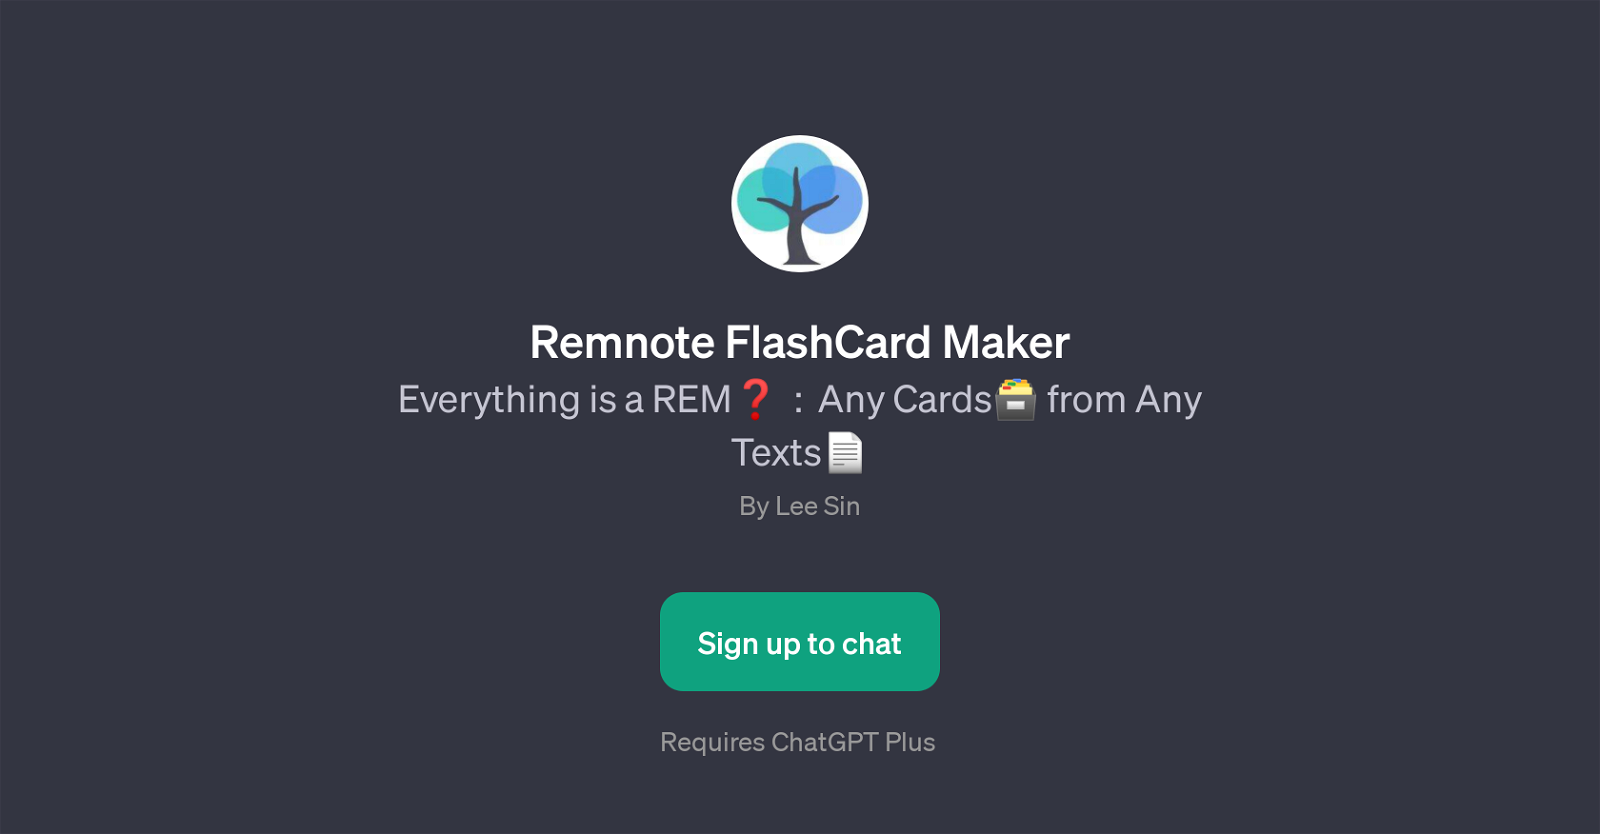 Remnote FlashCard Maker website